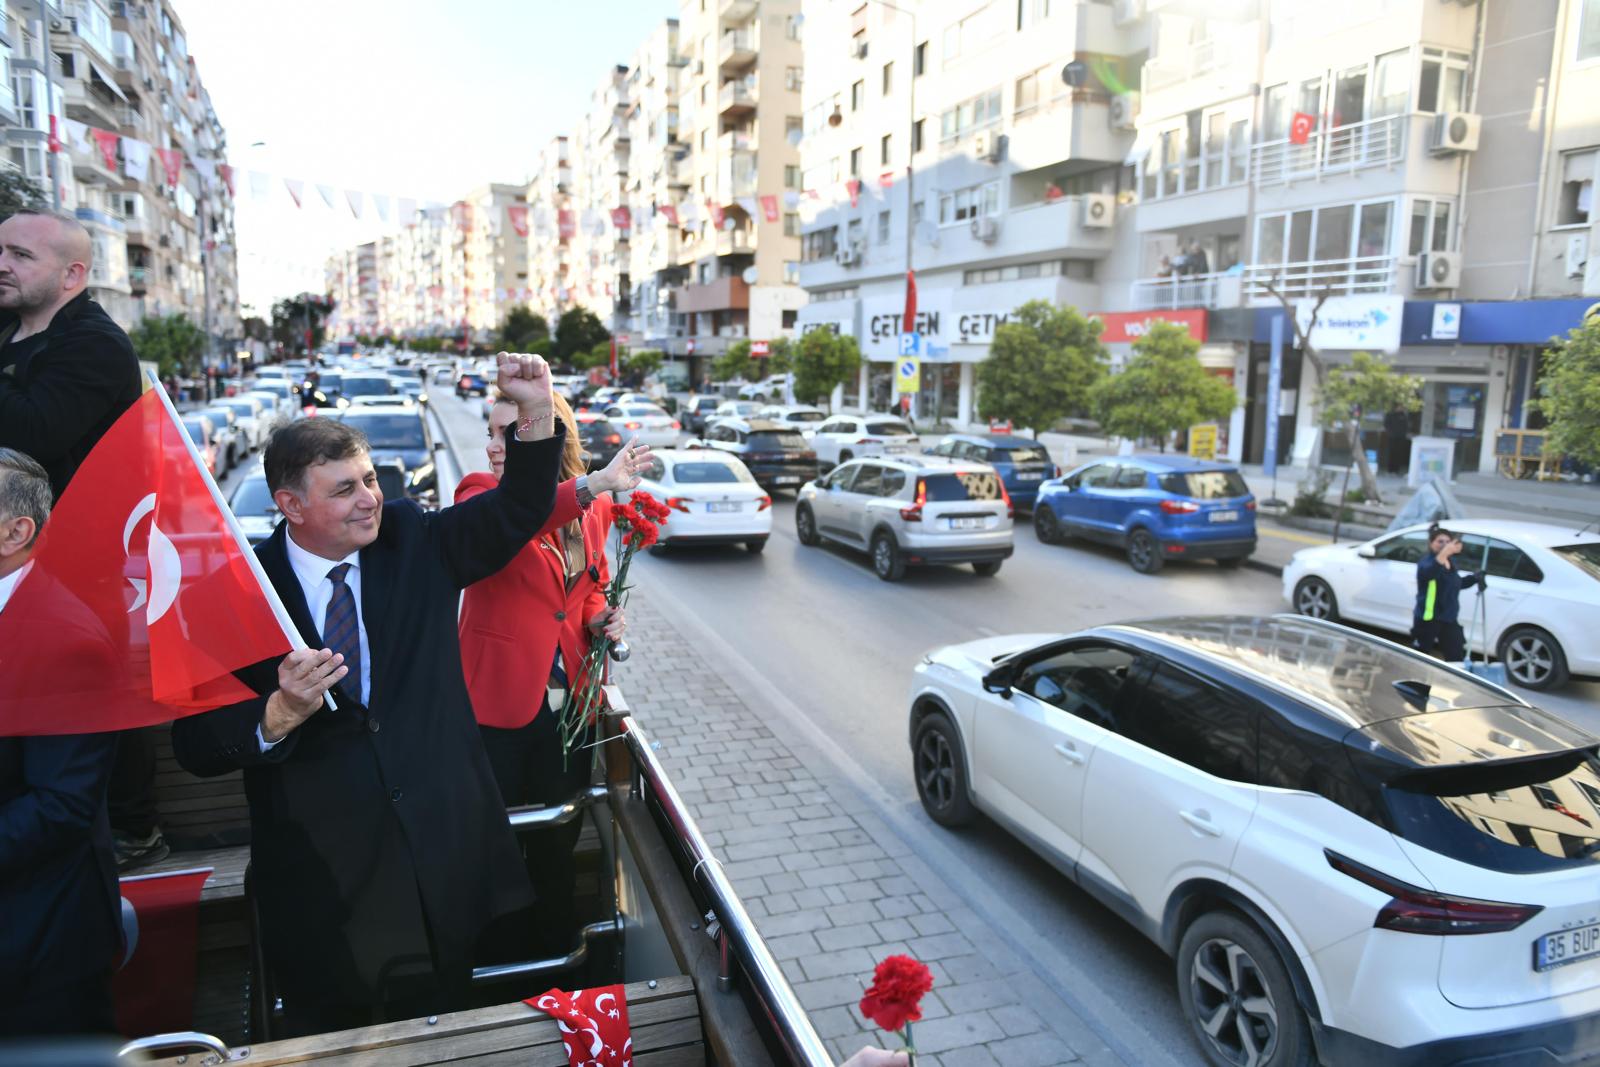 özgür özel CHP Genel Başkanı Özgür Özel ile CHP'nin İzmir Büyükşehir Belediye Başkan Adayı Dr. Cemil Tugay, İzmir'de üstü açık otobüsle yurttaşları selamladı. İzmirliler, Özel ve Tugay'ı sokaklarda Türk bayraklarıyla karşıladı.